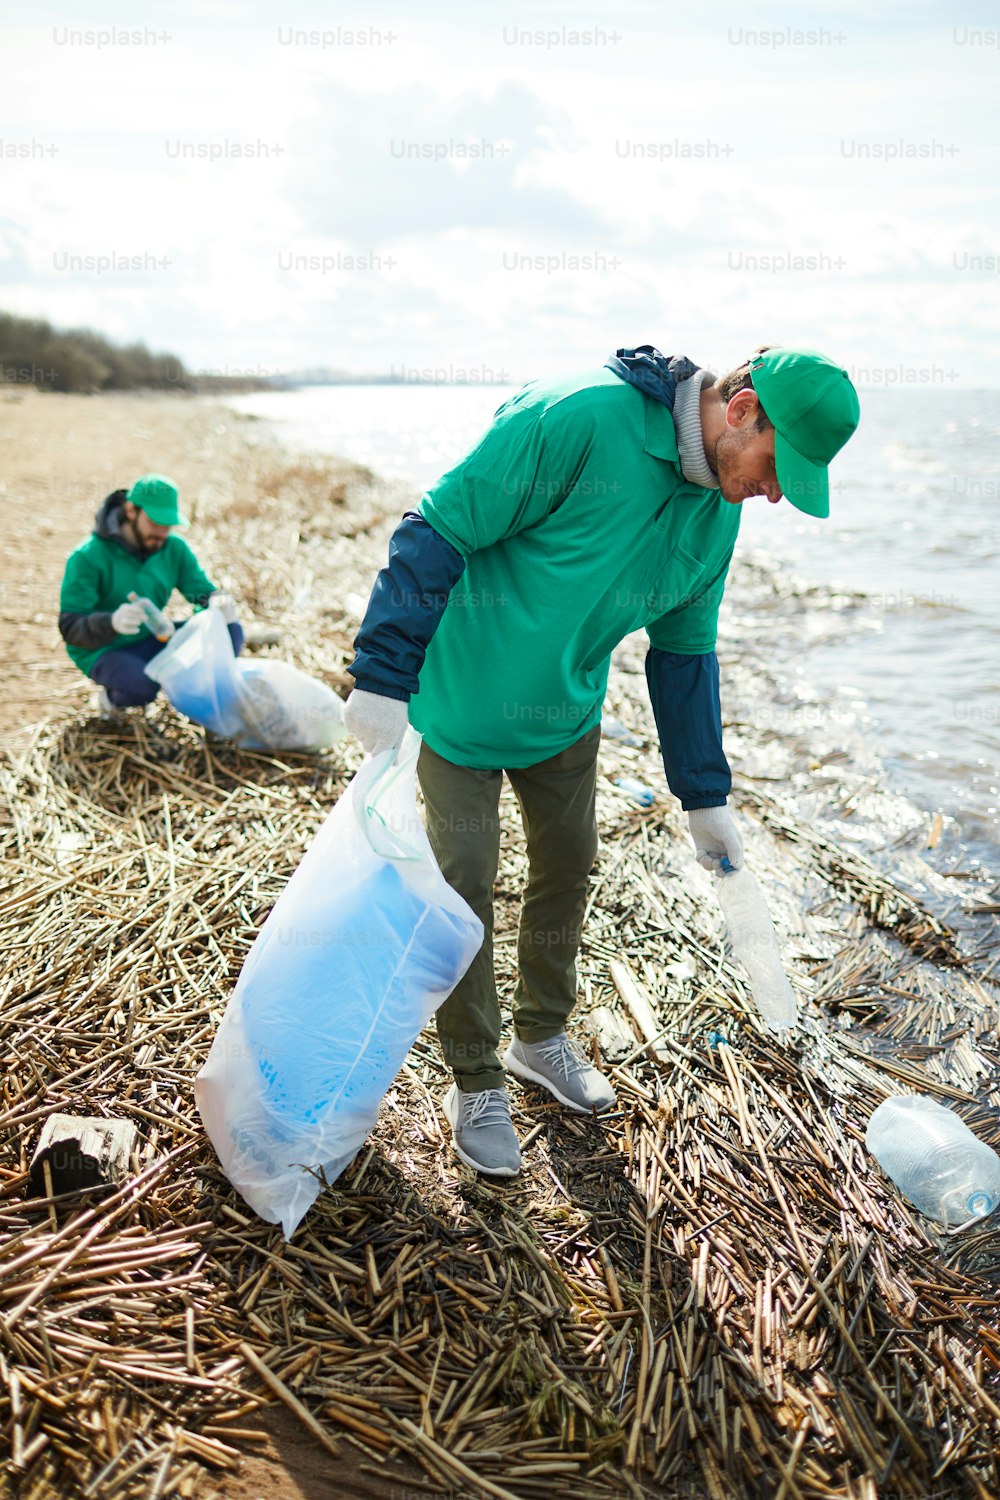 Jóvenes greenpeacers en uniforme caminando a lo largo de la orilla del agua y recogiendo basura para su utilización